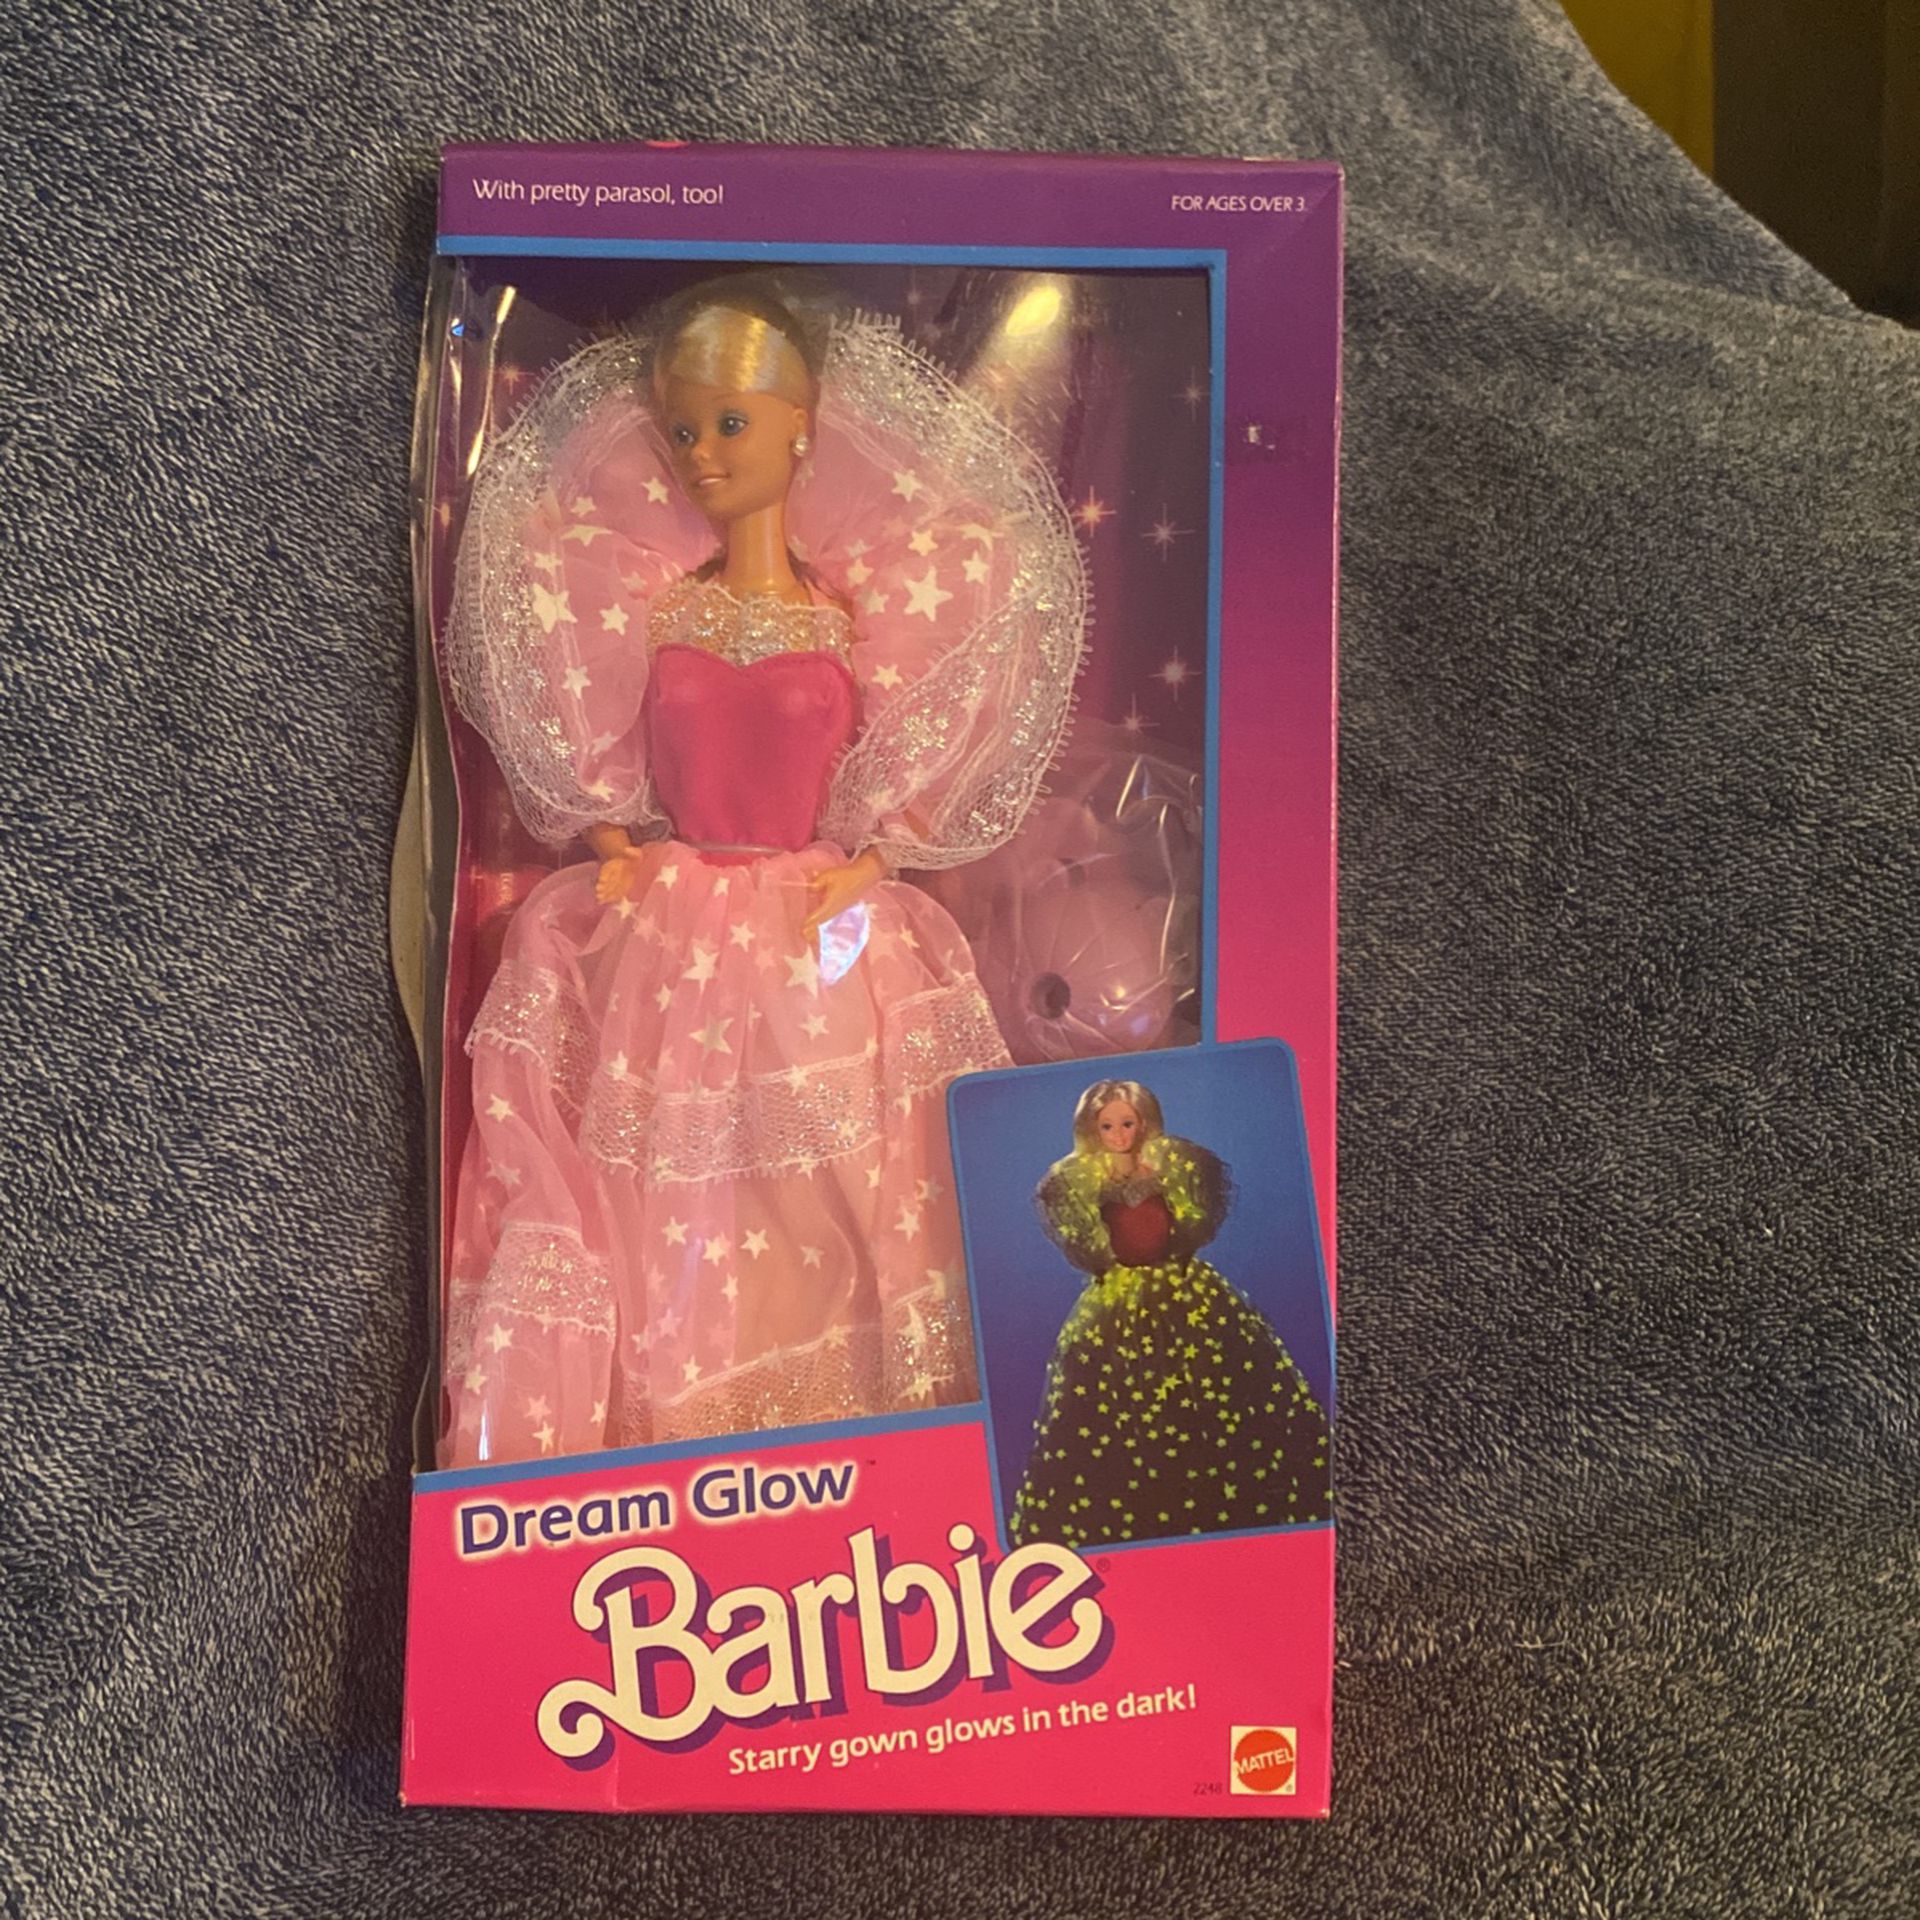 NIB Dream Glow Barbie Doll. No Ken Doll.